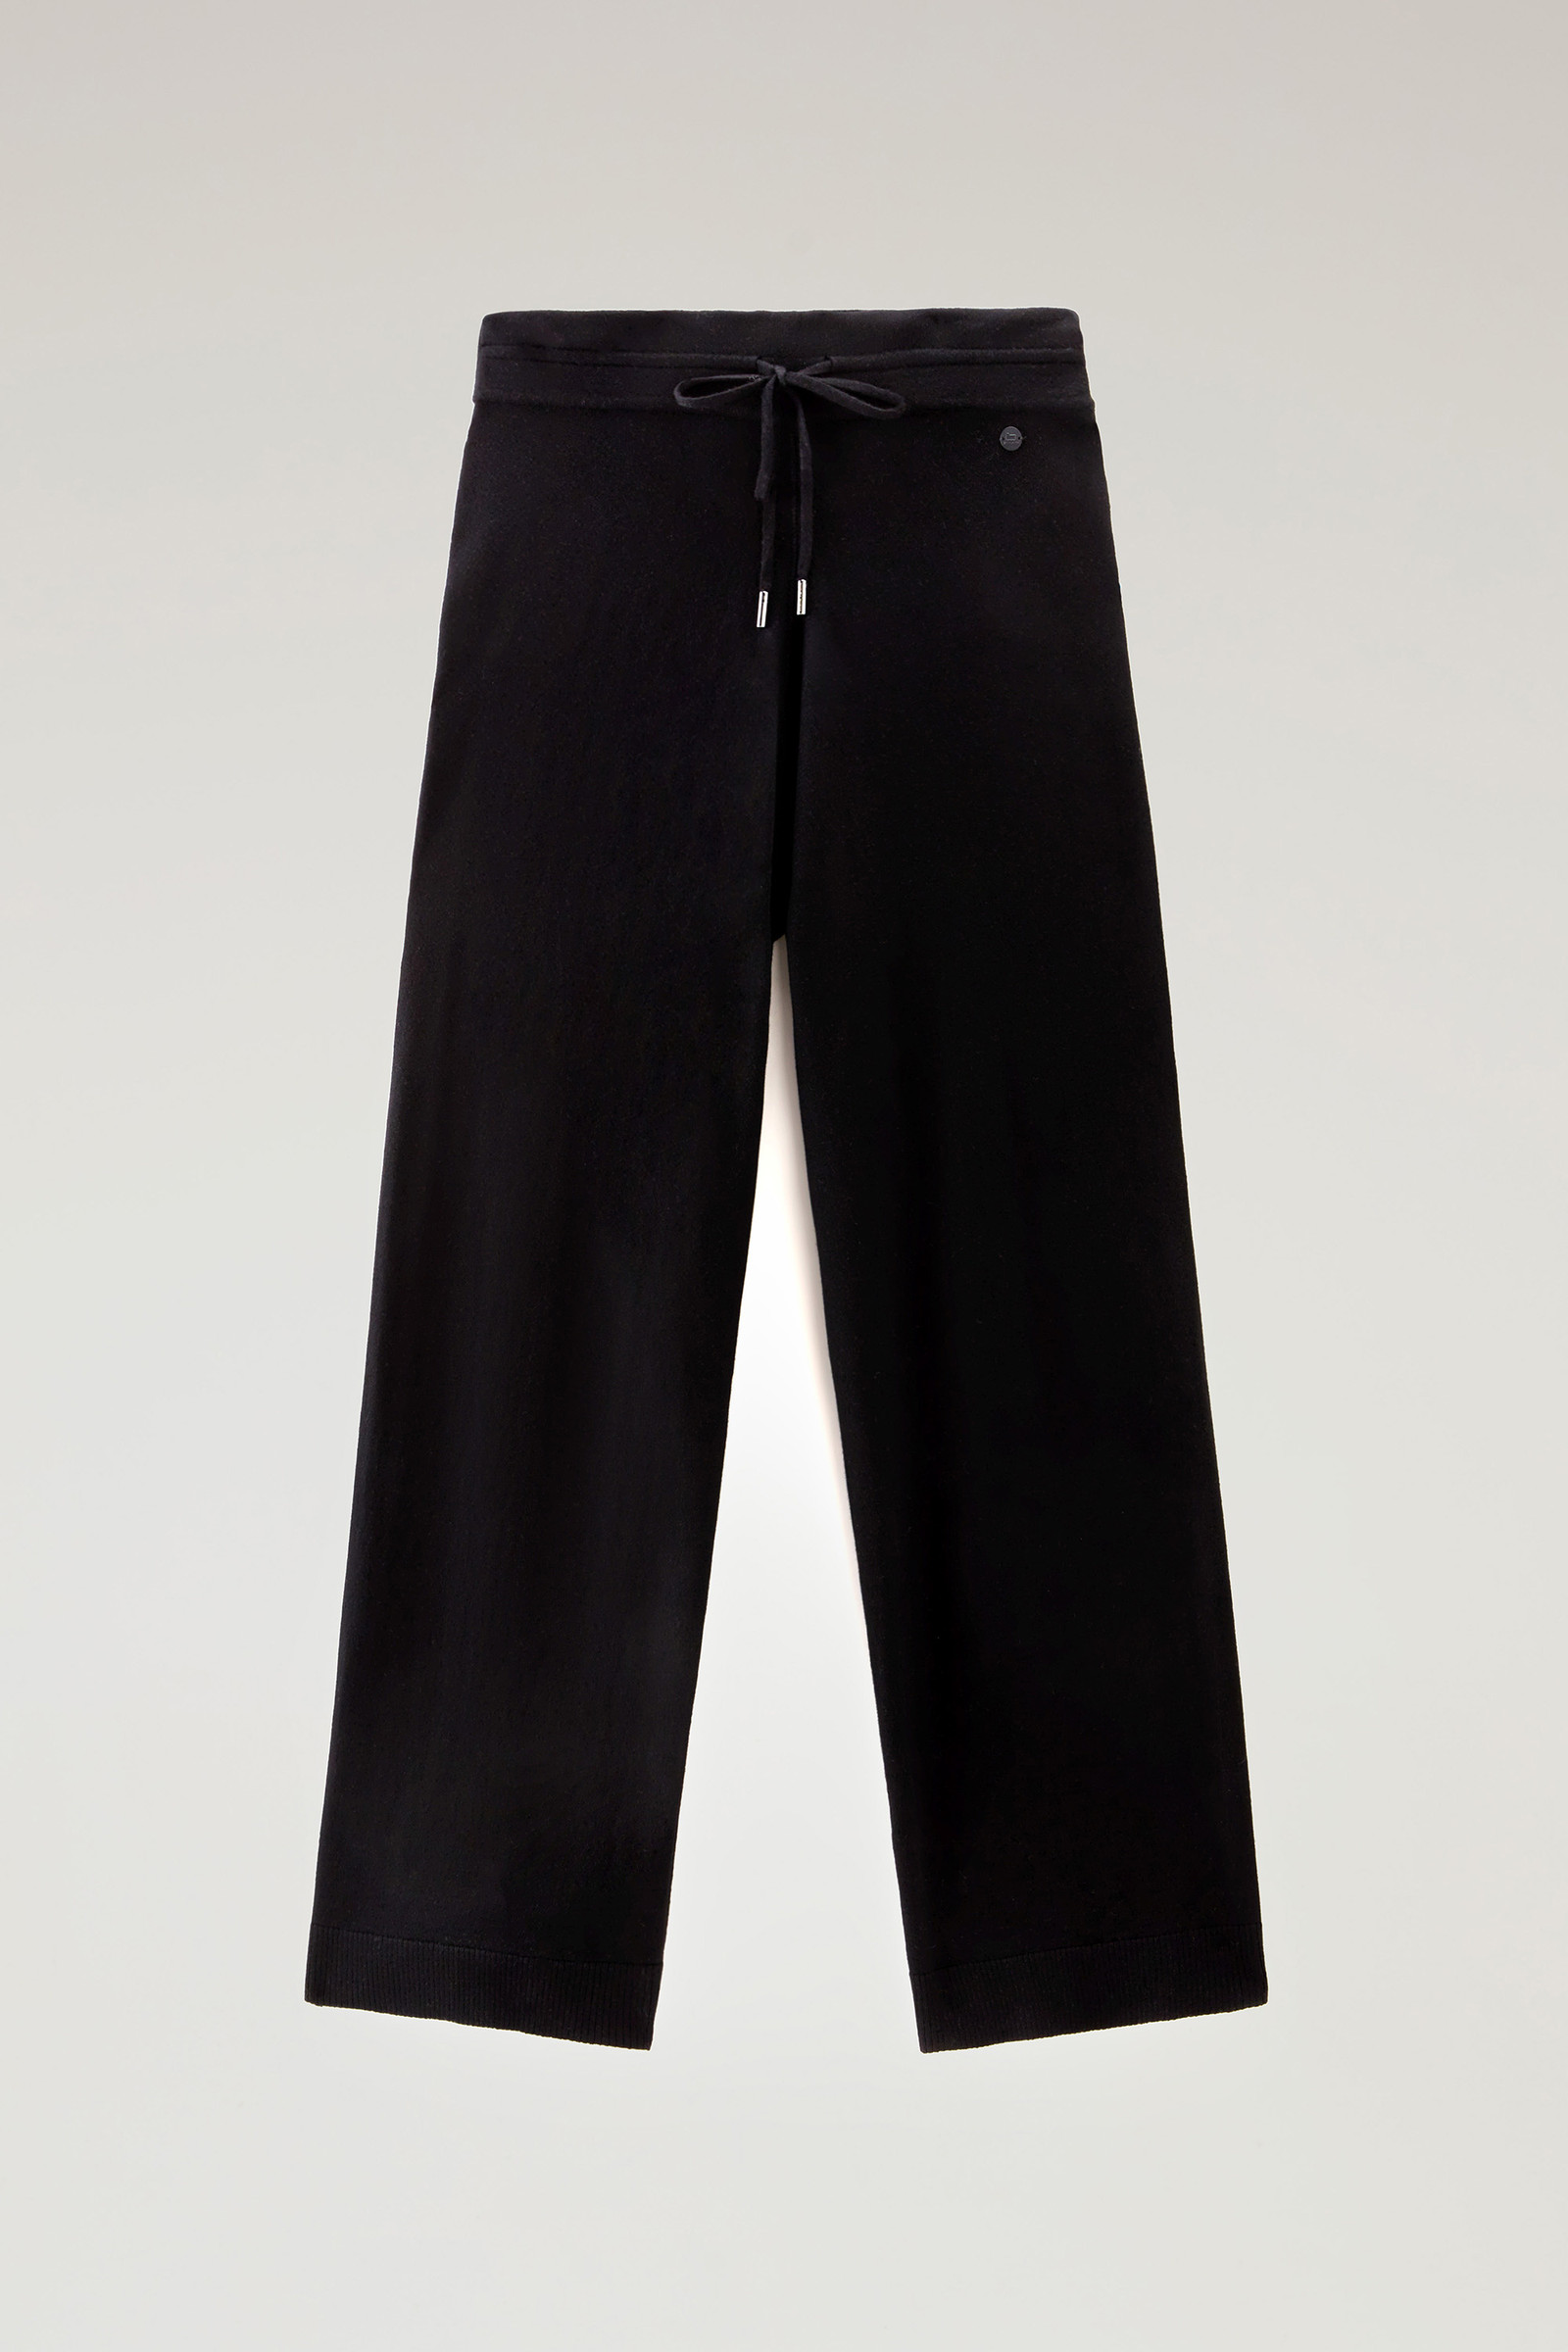 Women's Sporty Pants in Wool Blend Black | Woolrich USA